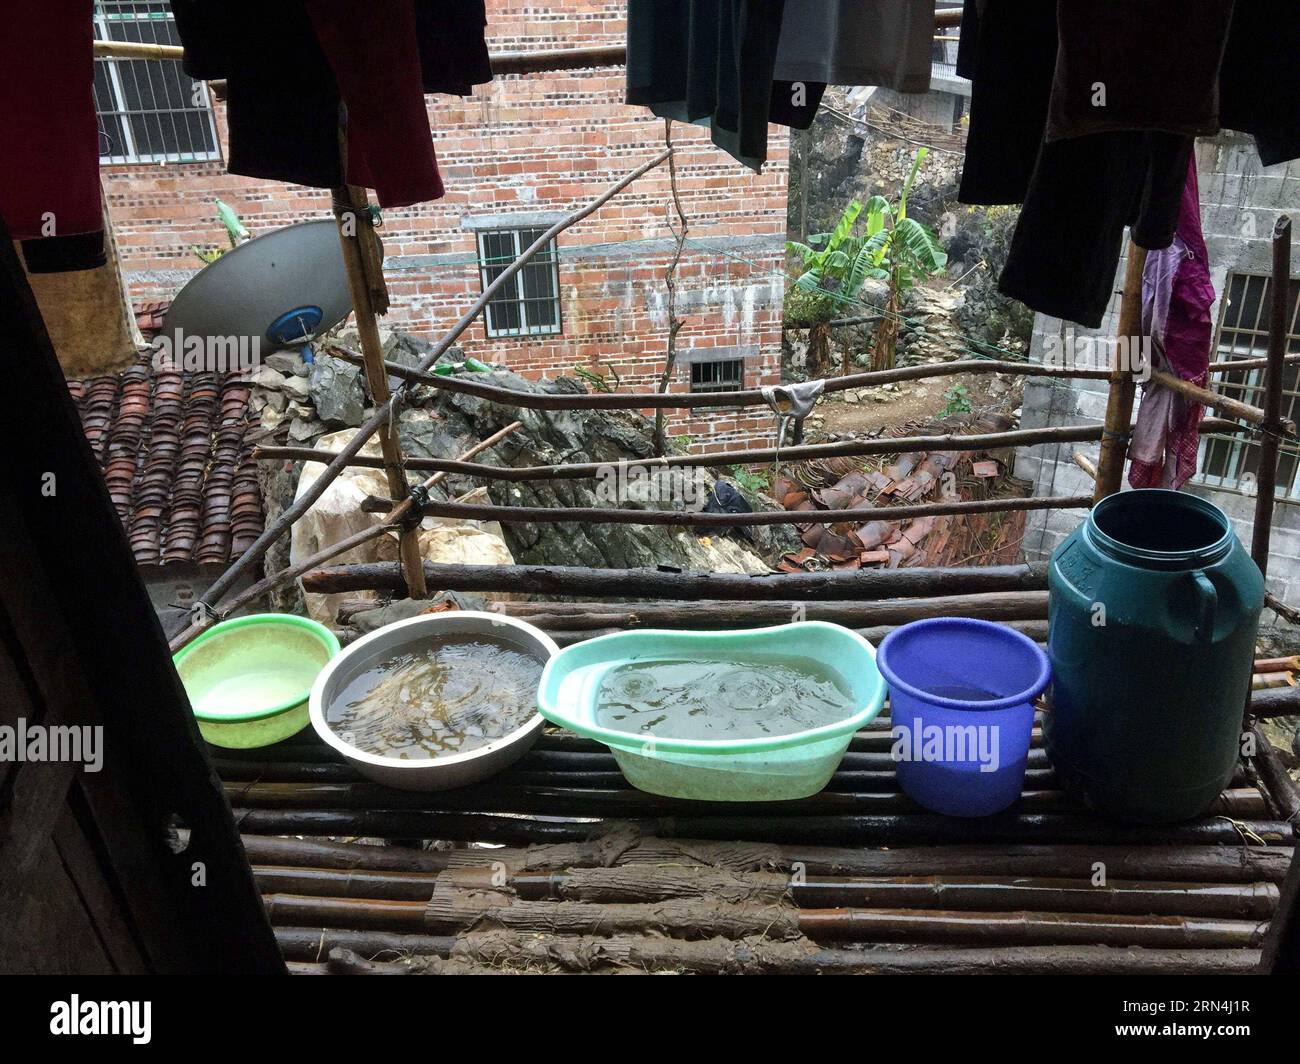 Das Regenwasser wird mit Containern in der Ortschaft Nongyong in Bansheng im Autonomen Kreis Dahua Yao, der südwestchinesischen autonomen Region Guangxi Zhuang, am 14. Februar 2015 gesammelt. Die Bansheng Township liegt im Zentrum der Karst-Landformen im Westen von Guangxi und leidet seit Ewigkeiten unter einem starken Wassermangel. Die Niederschläge sind daher ein Segen für die Menschen, die seit etwa 1.000 Jahren auf diesem Land leben und hauptsächlich der ethnischen Gruppe der Yao angehören. Um ihren täglichen Lebensbedürfnissen gerecht zu werden, sammeln die Einheimischen immer Regenwasser mit Eimern und Fässern jeder Größe sowie mit Dächern ihrer Häuser. Im letzten Jahrzehnt war Th Stockfoto